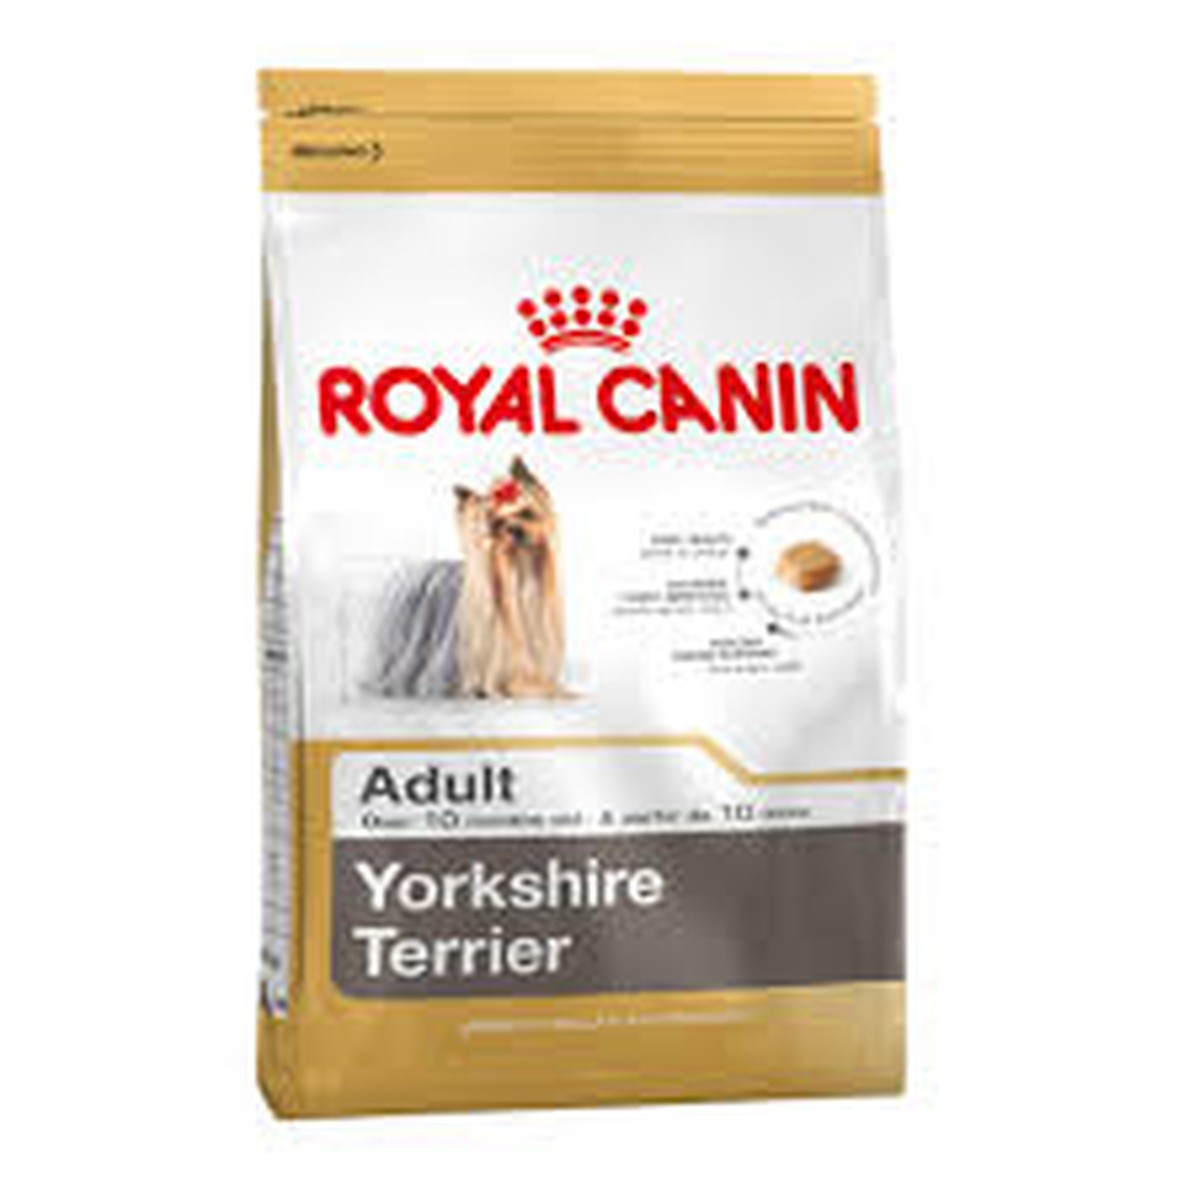 Royal Canin  Yorkshire Terrier 1.5 kg  1.5 kg